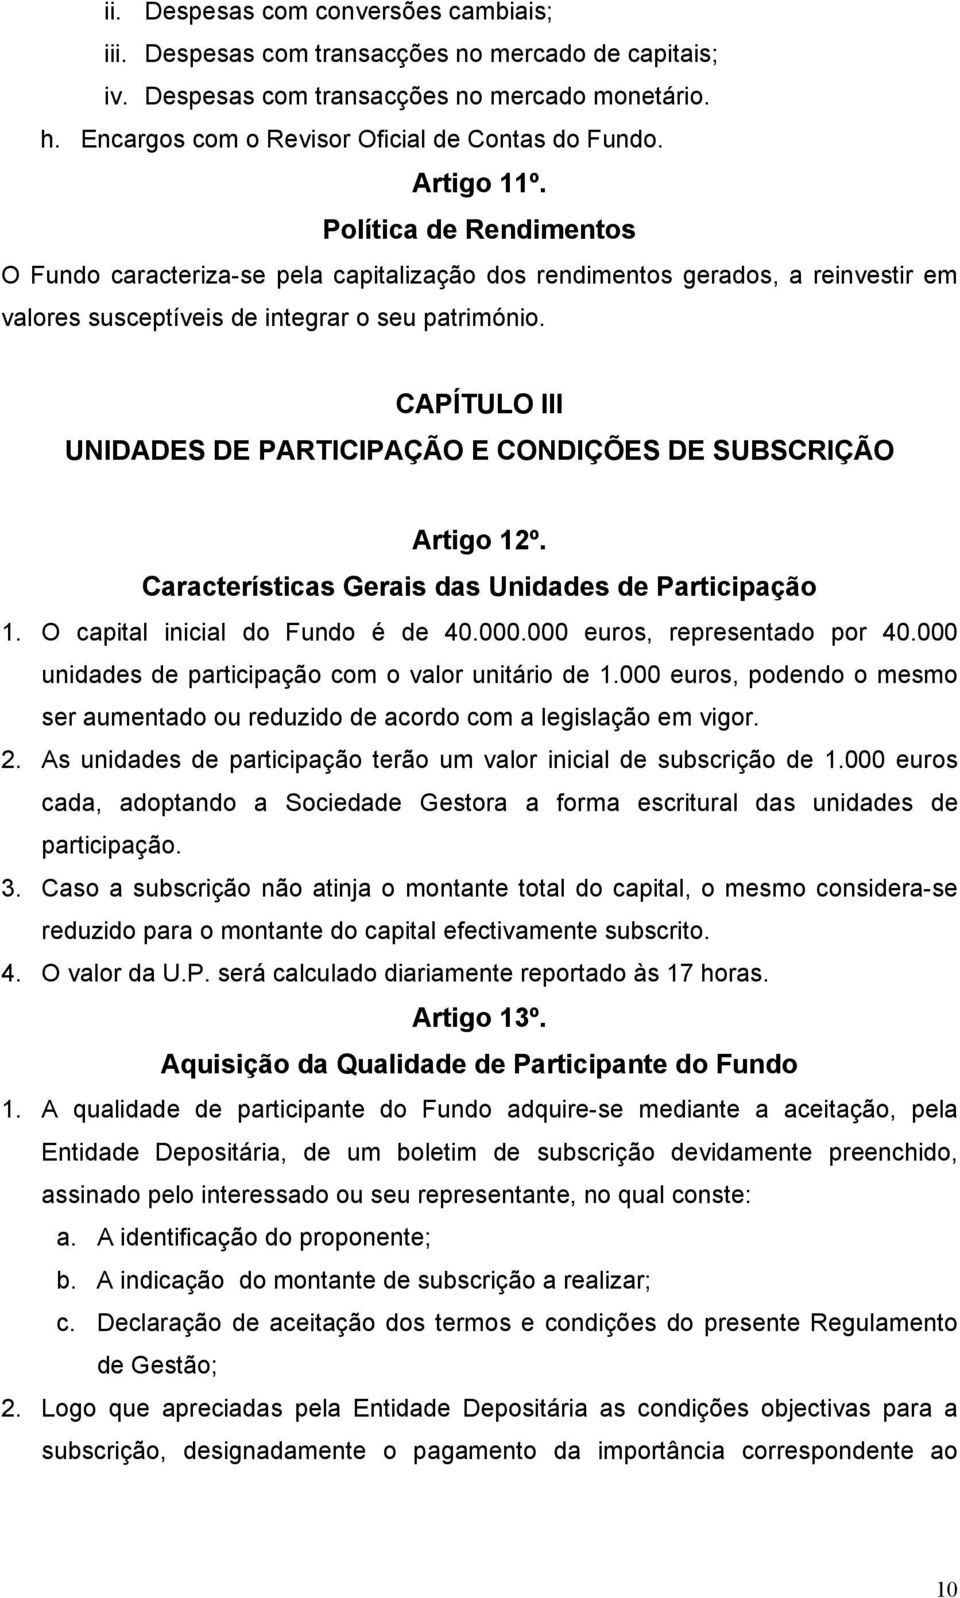 CAPÍTULO III UNIDADES DE PARTICIPAÇÃO E CONDIÇÕES DE SUBSCRIÇÃO Artigo 12º. Características Gerais das Unidades de Participação 1. O capital inicial do Fundo é de 40.000.